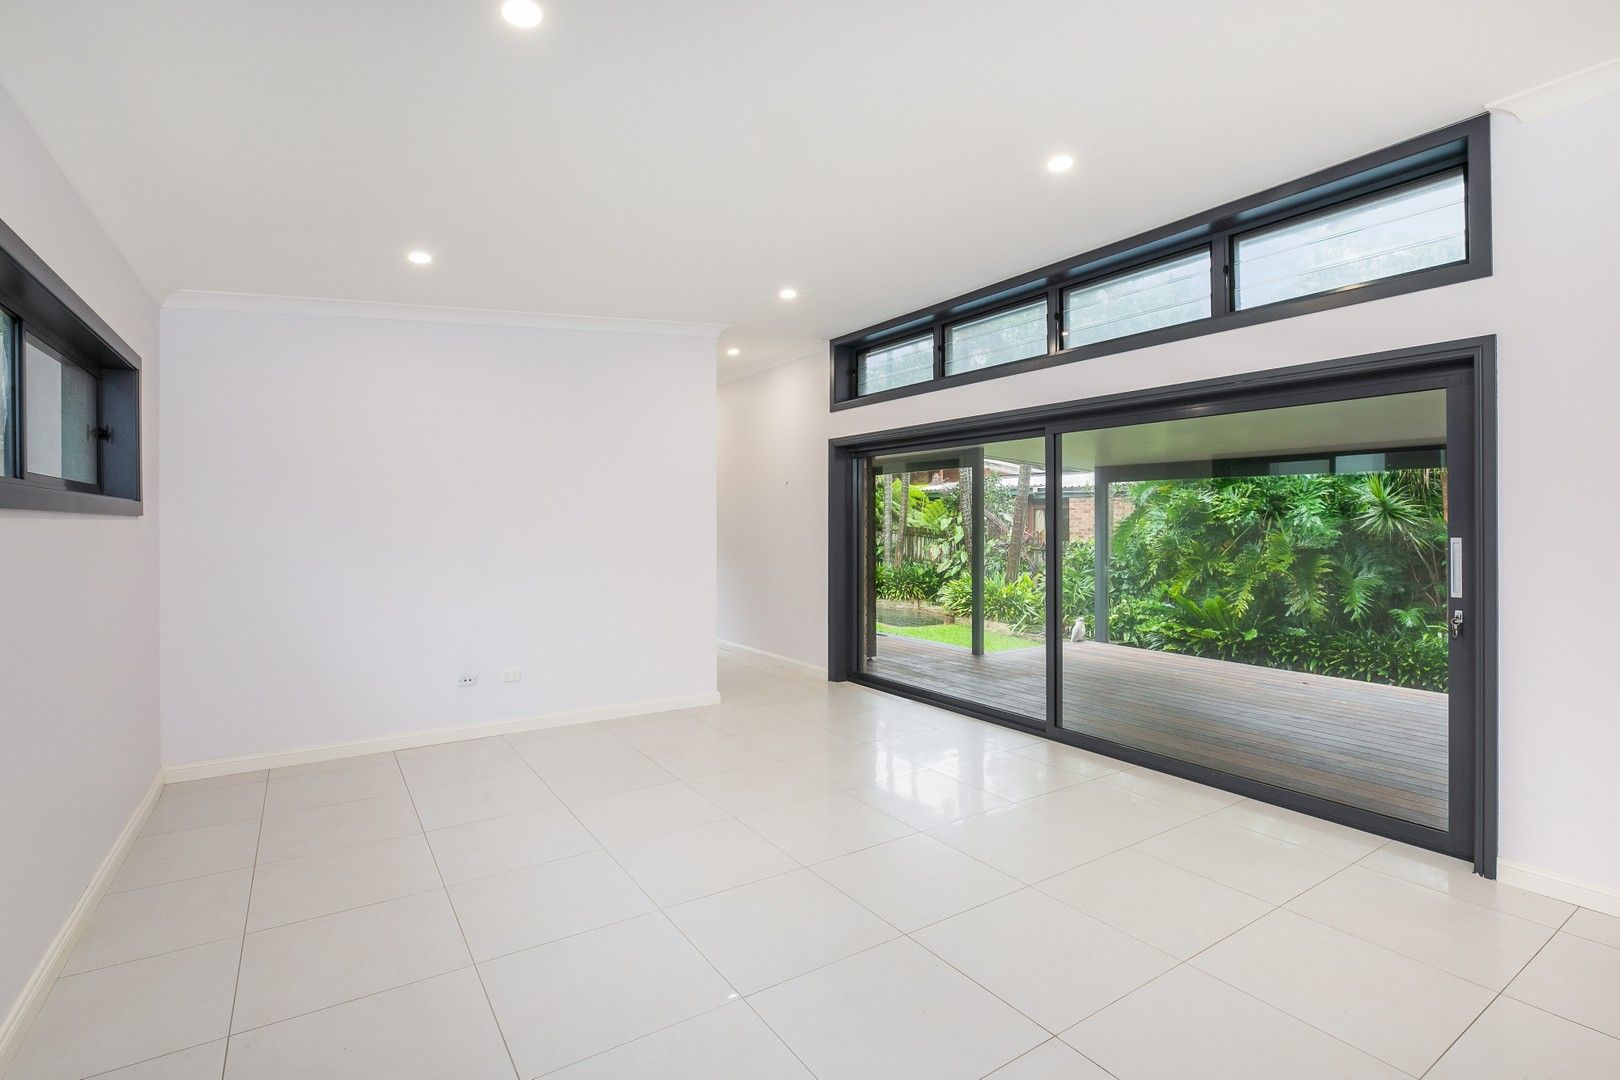 5 bedrooms Apartment / Unit / Flat in 71 Jacaranda Road CARINGBAH SOUTH NSW, 2229